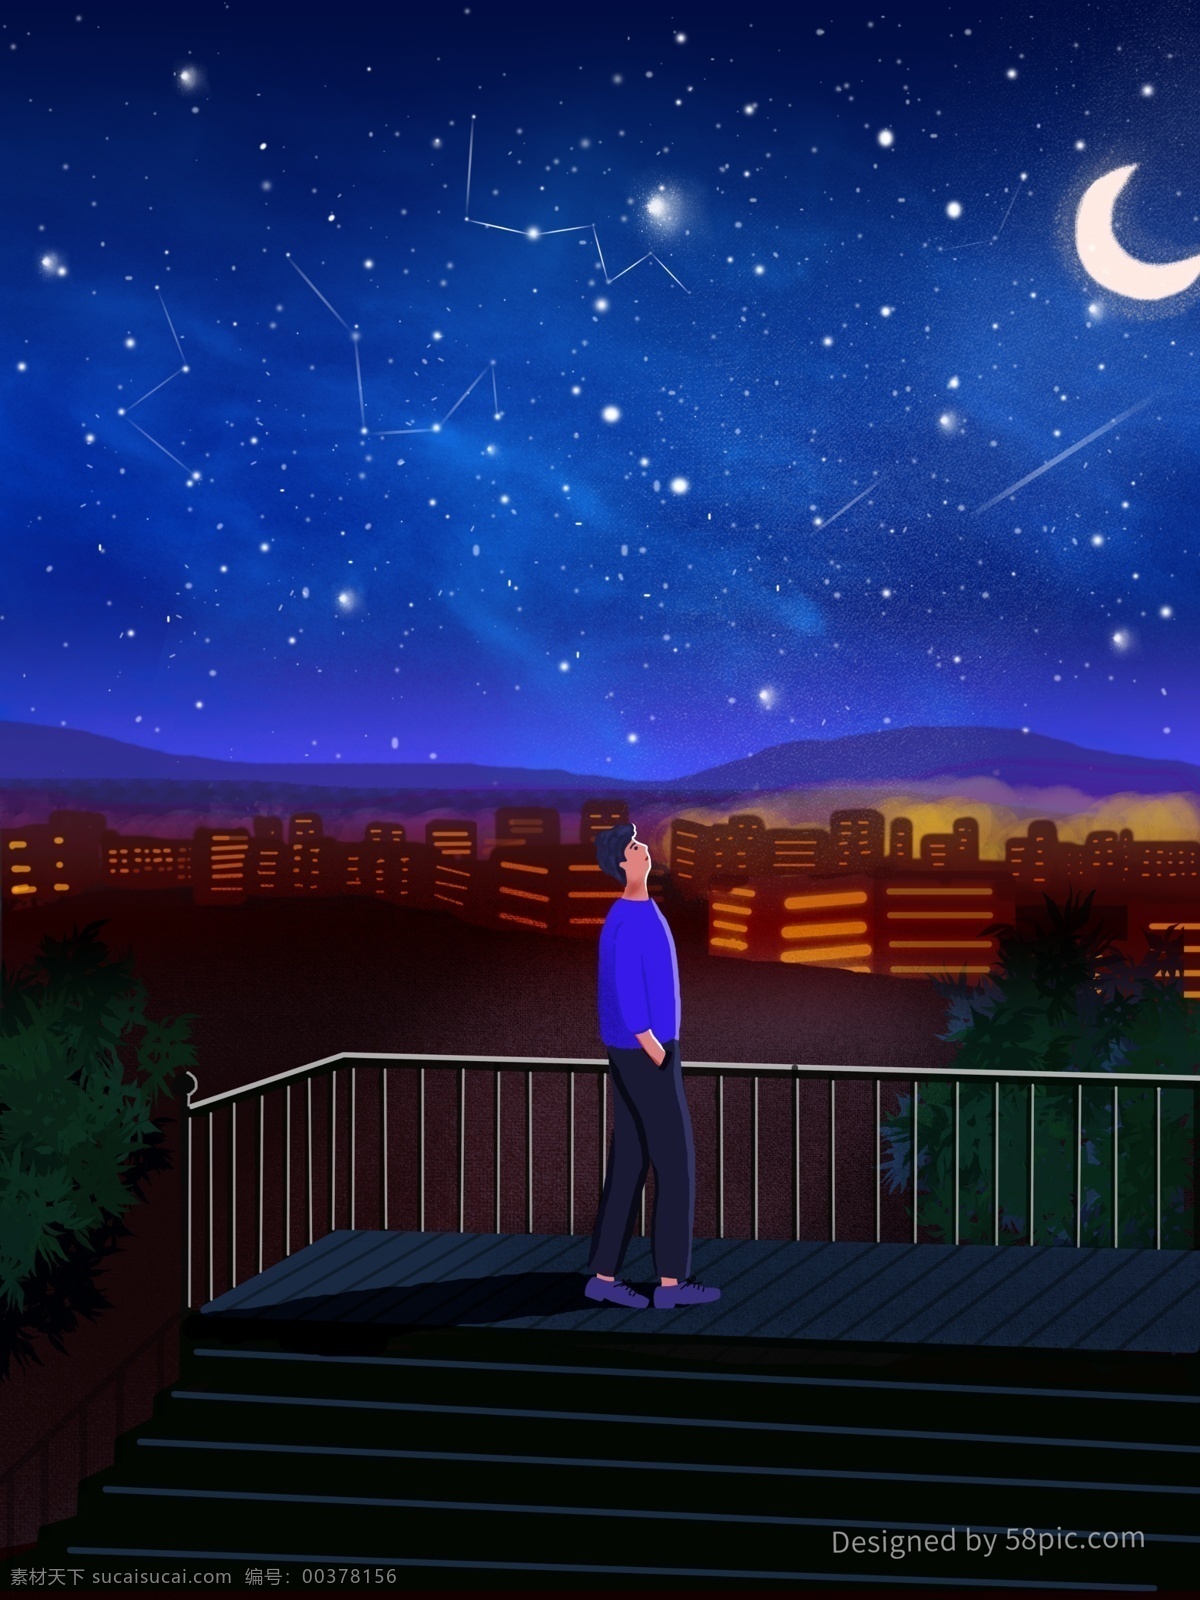 原创 城市 夜晚 星空 治愈 插画 月亮 唯美 浪漫 男孩 流星 楼梯